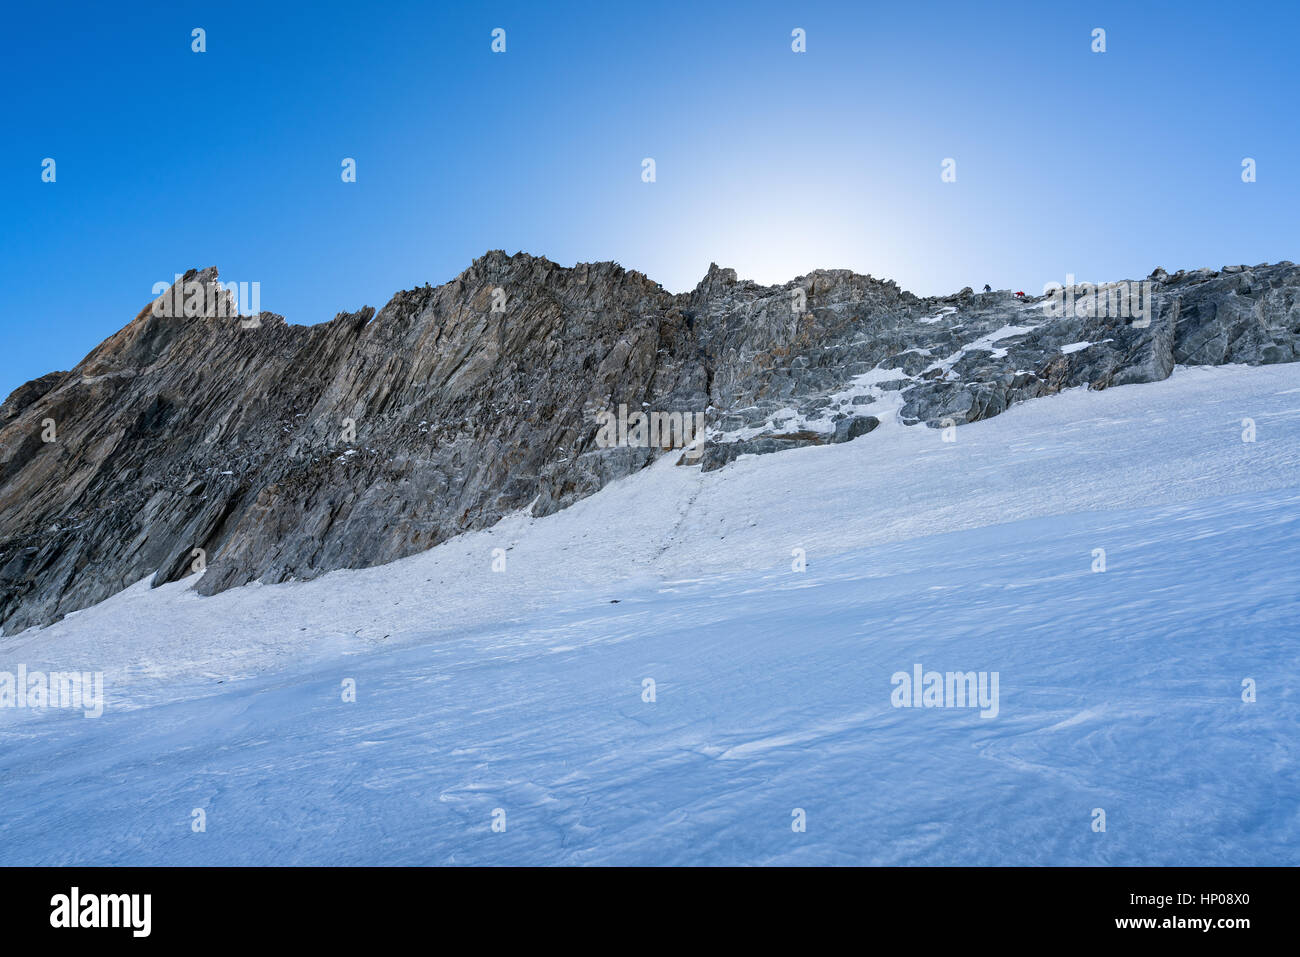 Mountain climbing in the Alps, Courmayeur, Italy, Alps, Europe, EU Stock Photo